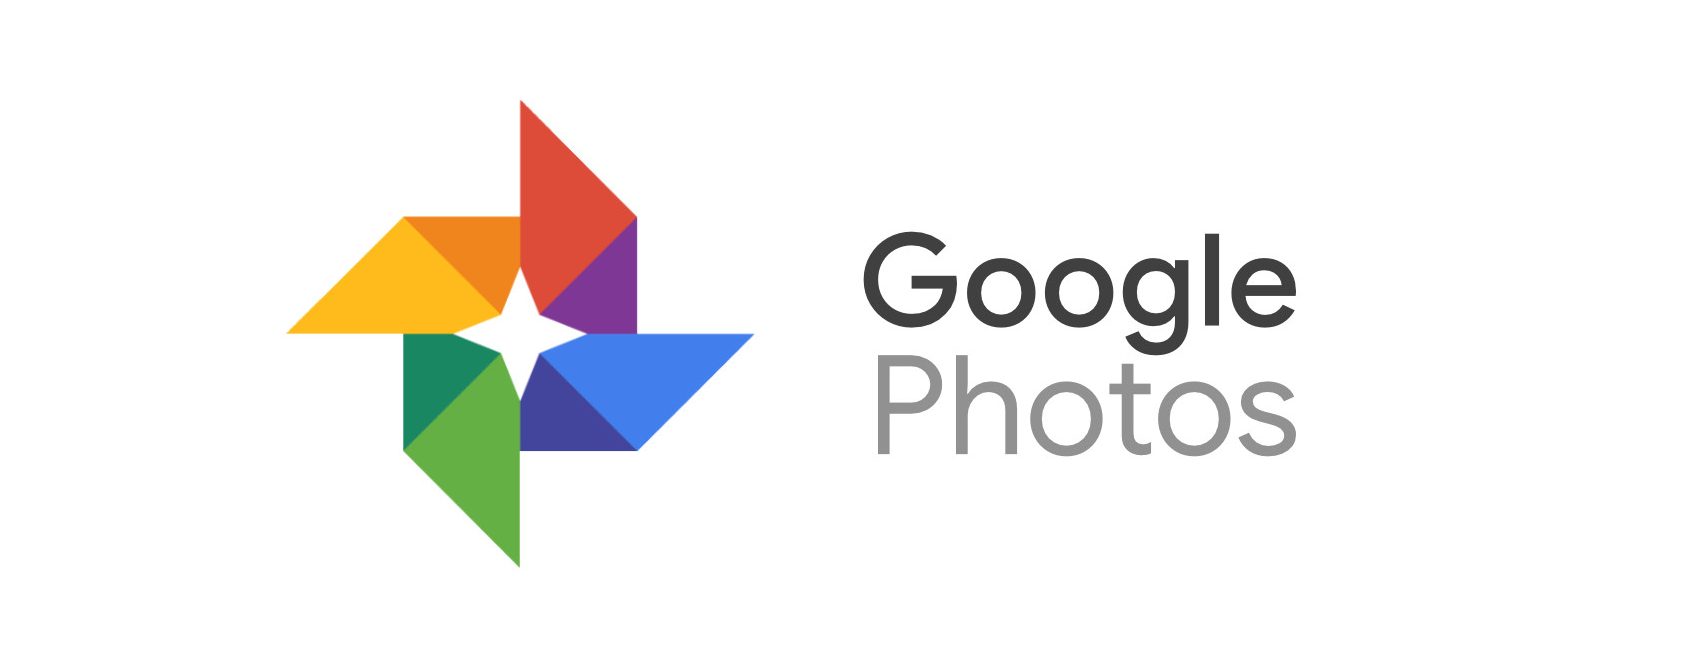 Google Memperkenalkan Perkhidmatan Baru Yang Memilih & Mencetak dari Aplikasi Foto Google Anda